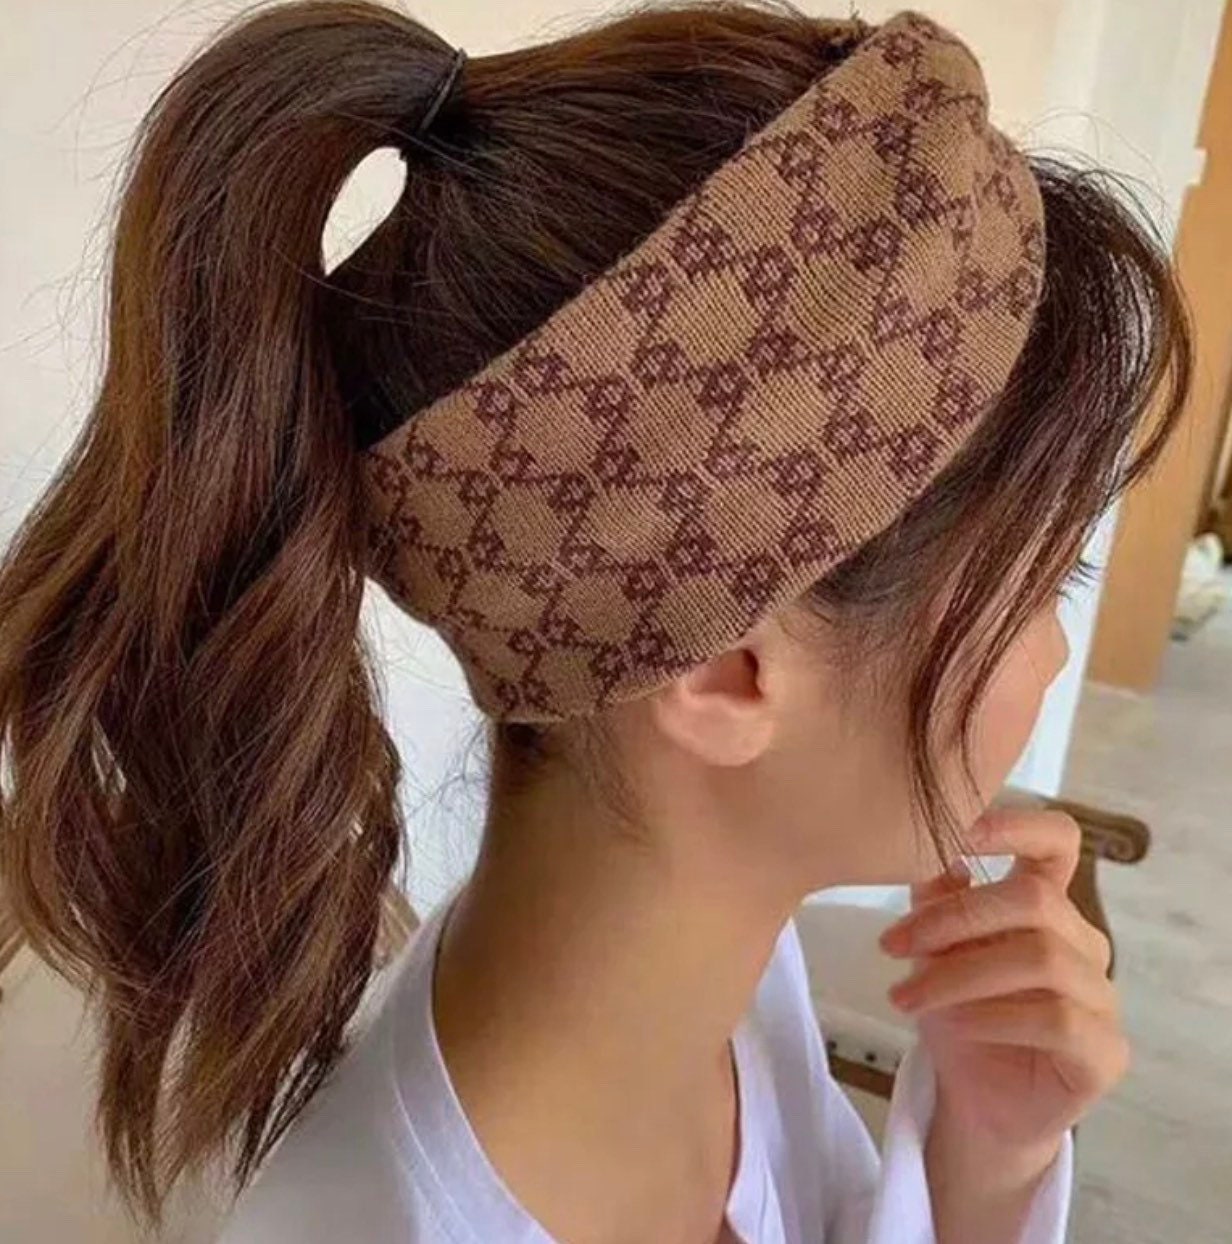 designer headbands for women louis vuitton